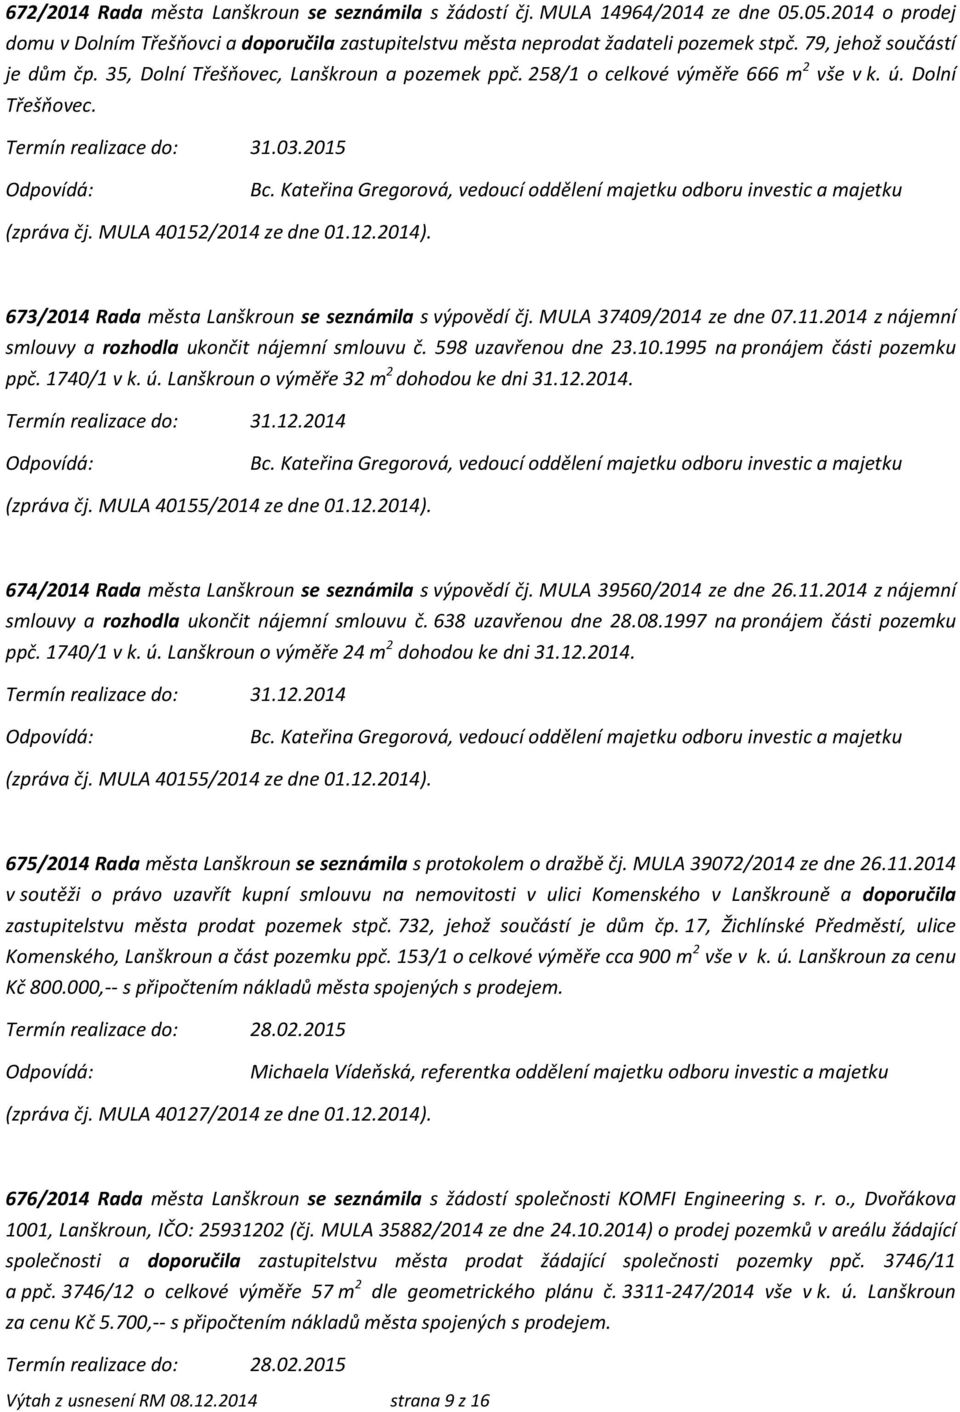 673/2014 Rada města Lanškroun se seznámila s výpovědí čj. MULA 37409/2014 ze dne 07.11.2014 z nájemní smlouvy a rozhodla ukončit nájemní smlouvu č. 598 uzavřenou dne 23.10.